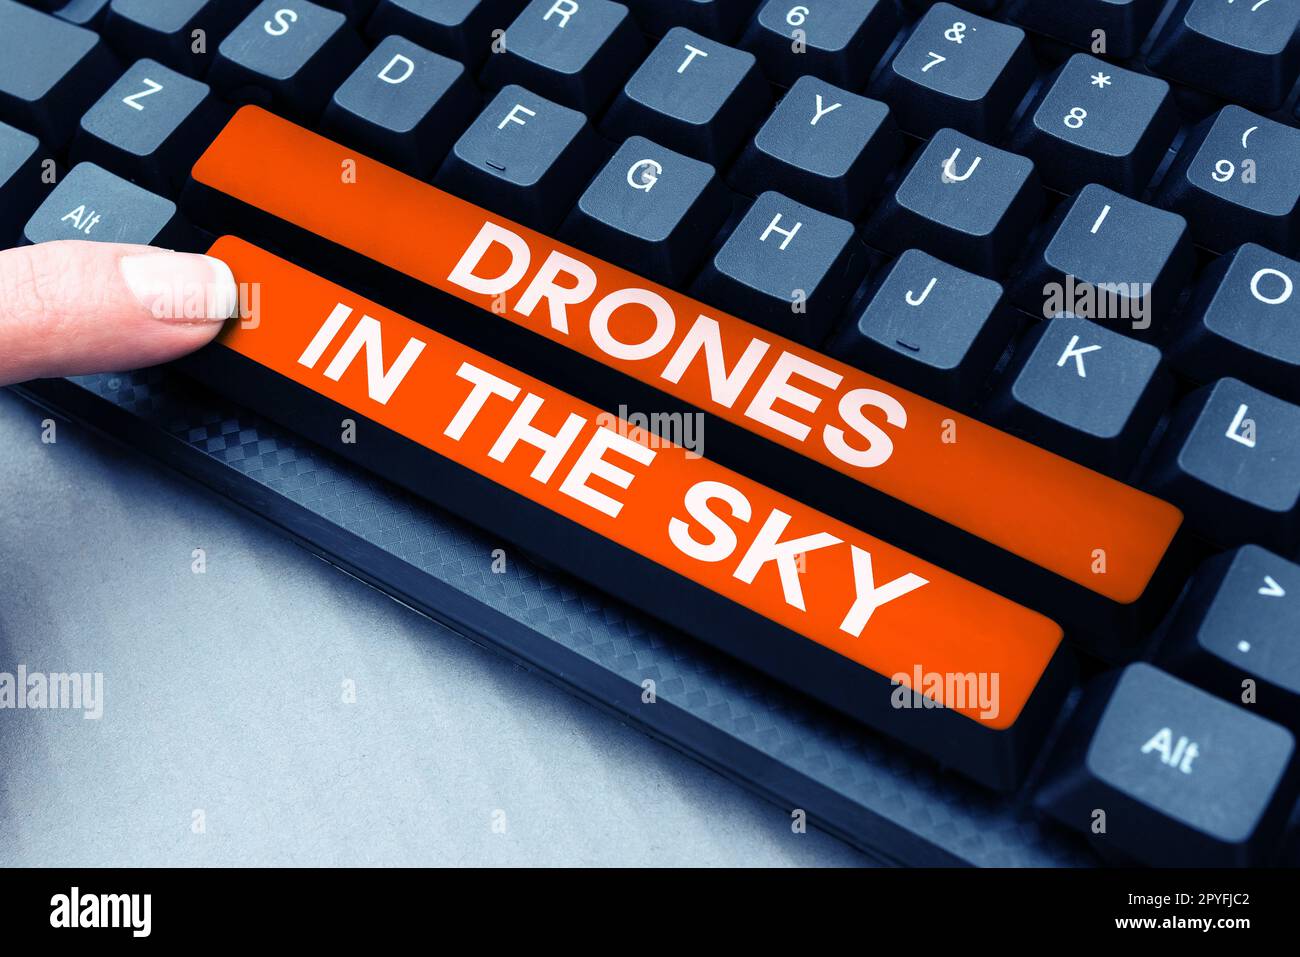 Didascalia concettuale droni nel cielo. Business vetrina moderna fotocamera aerea tecnologia avanzata Foto Stock